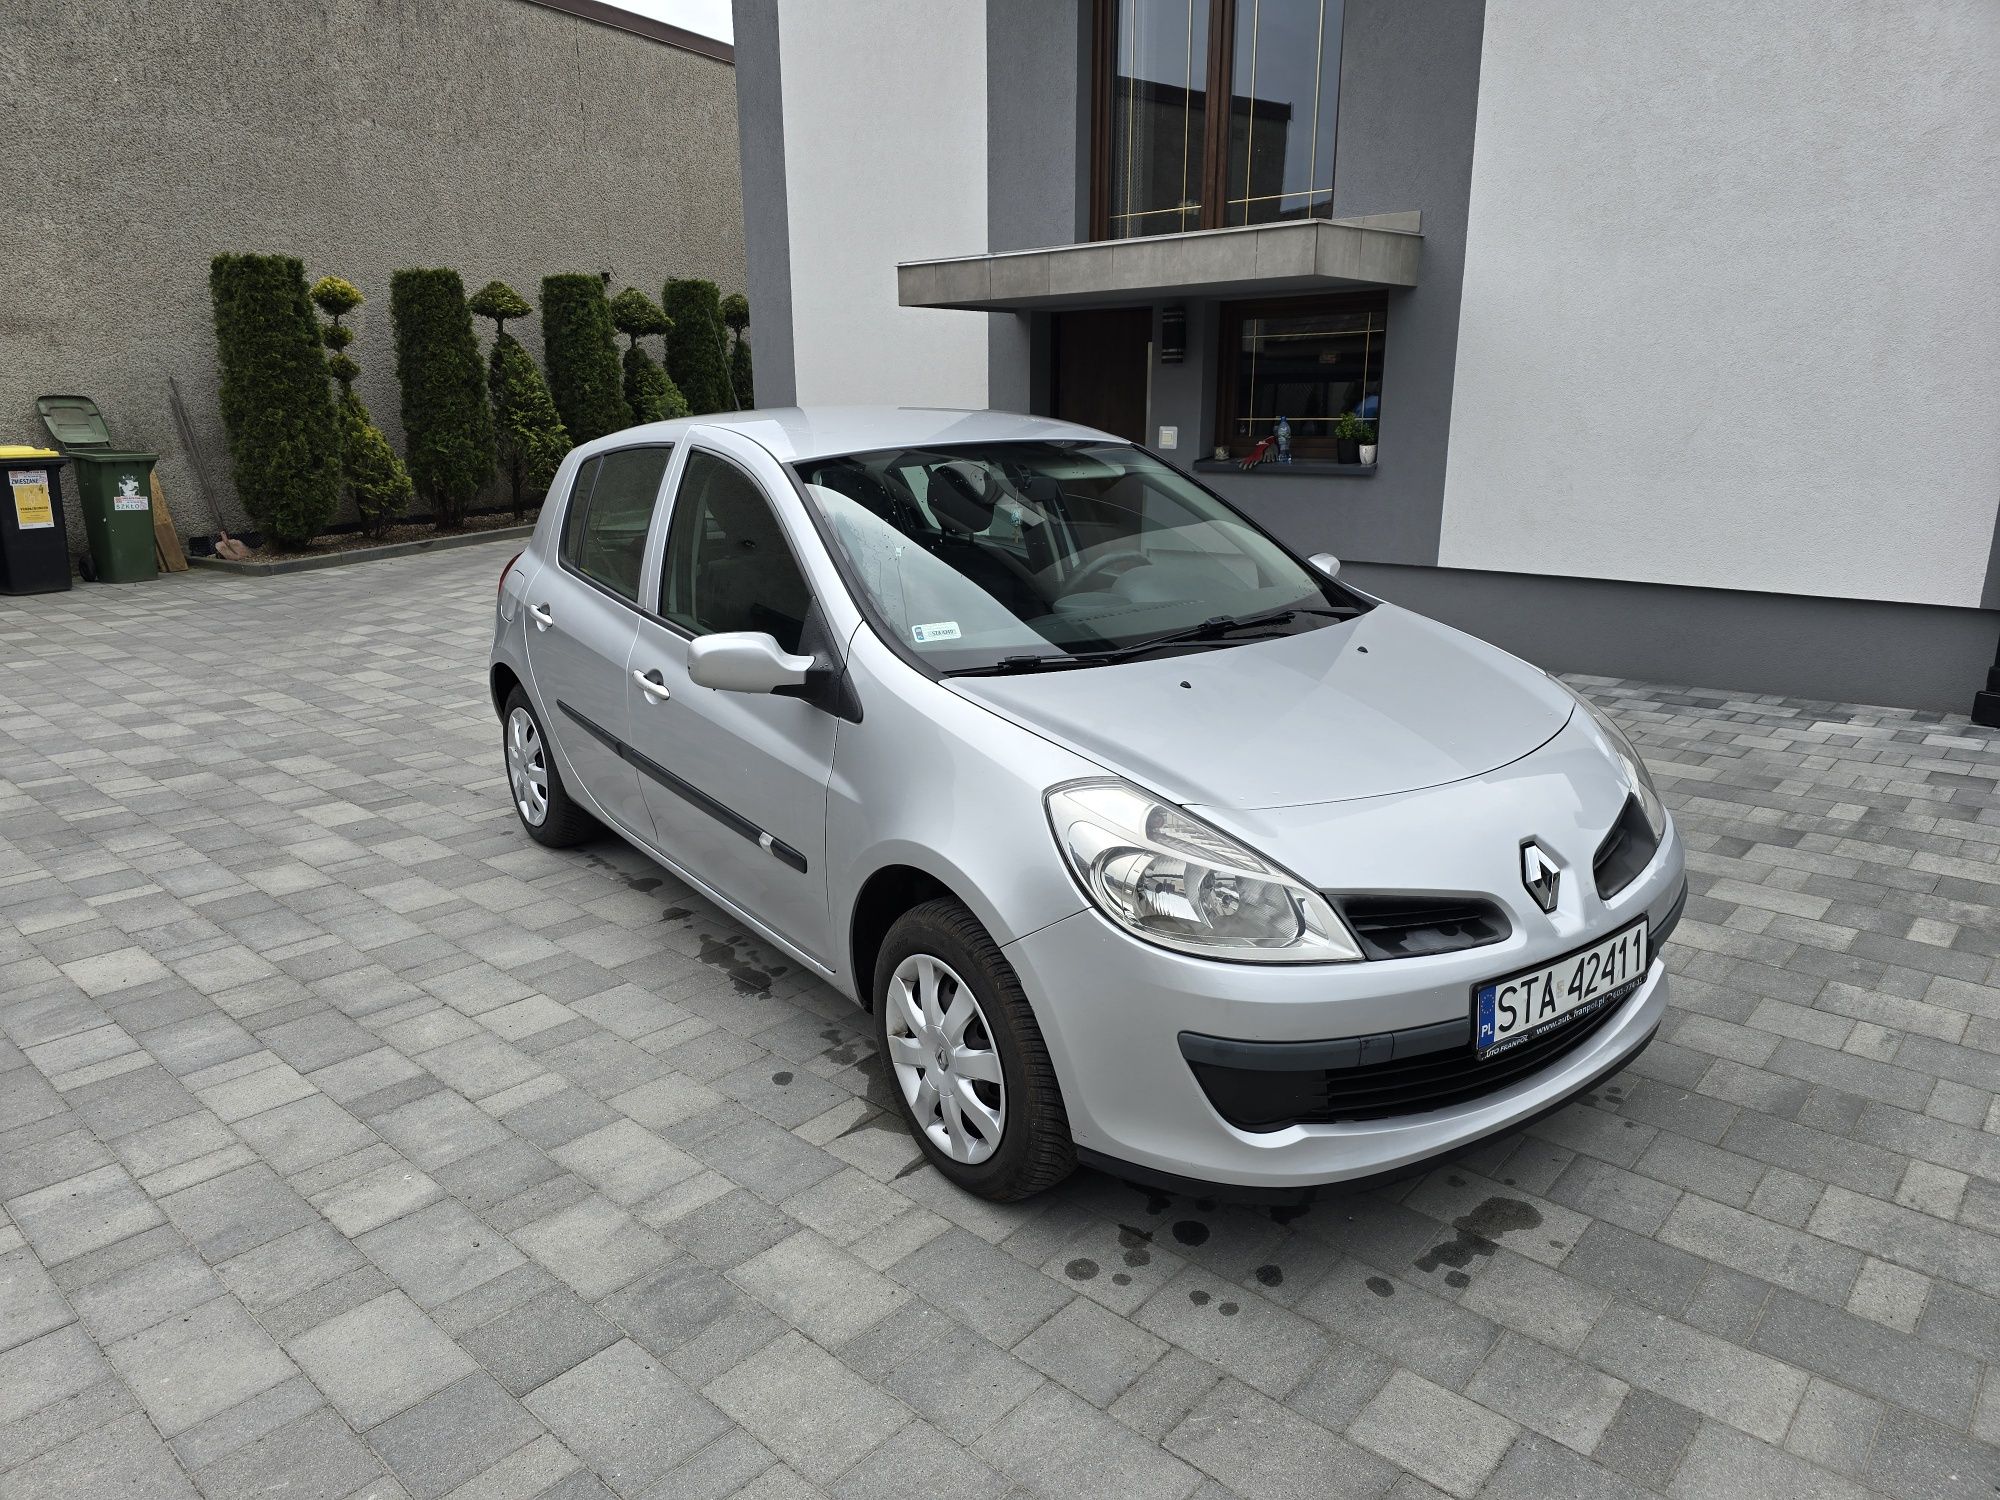 Renault Clio 2008rok 1.2 gaz klima bez korozji! Okazja